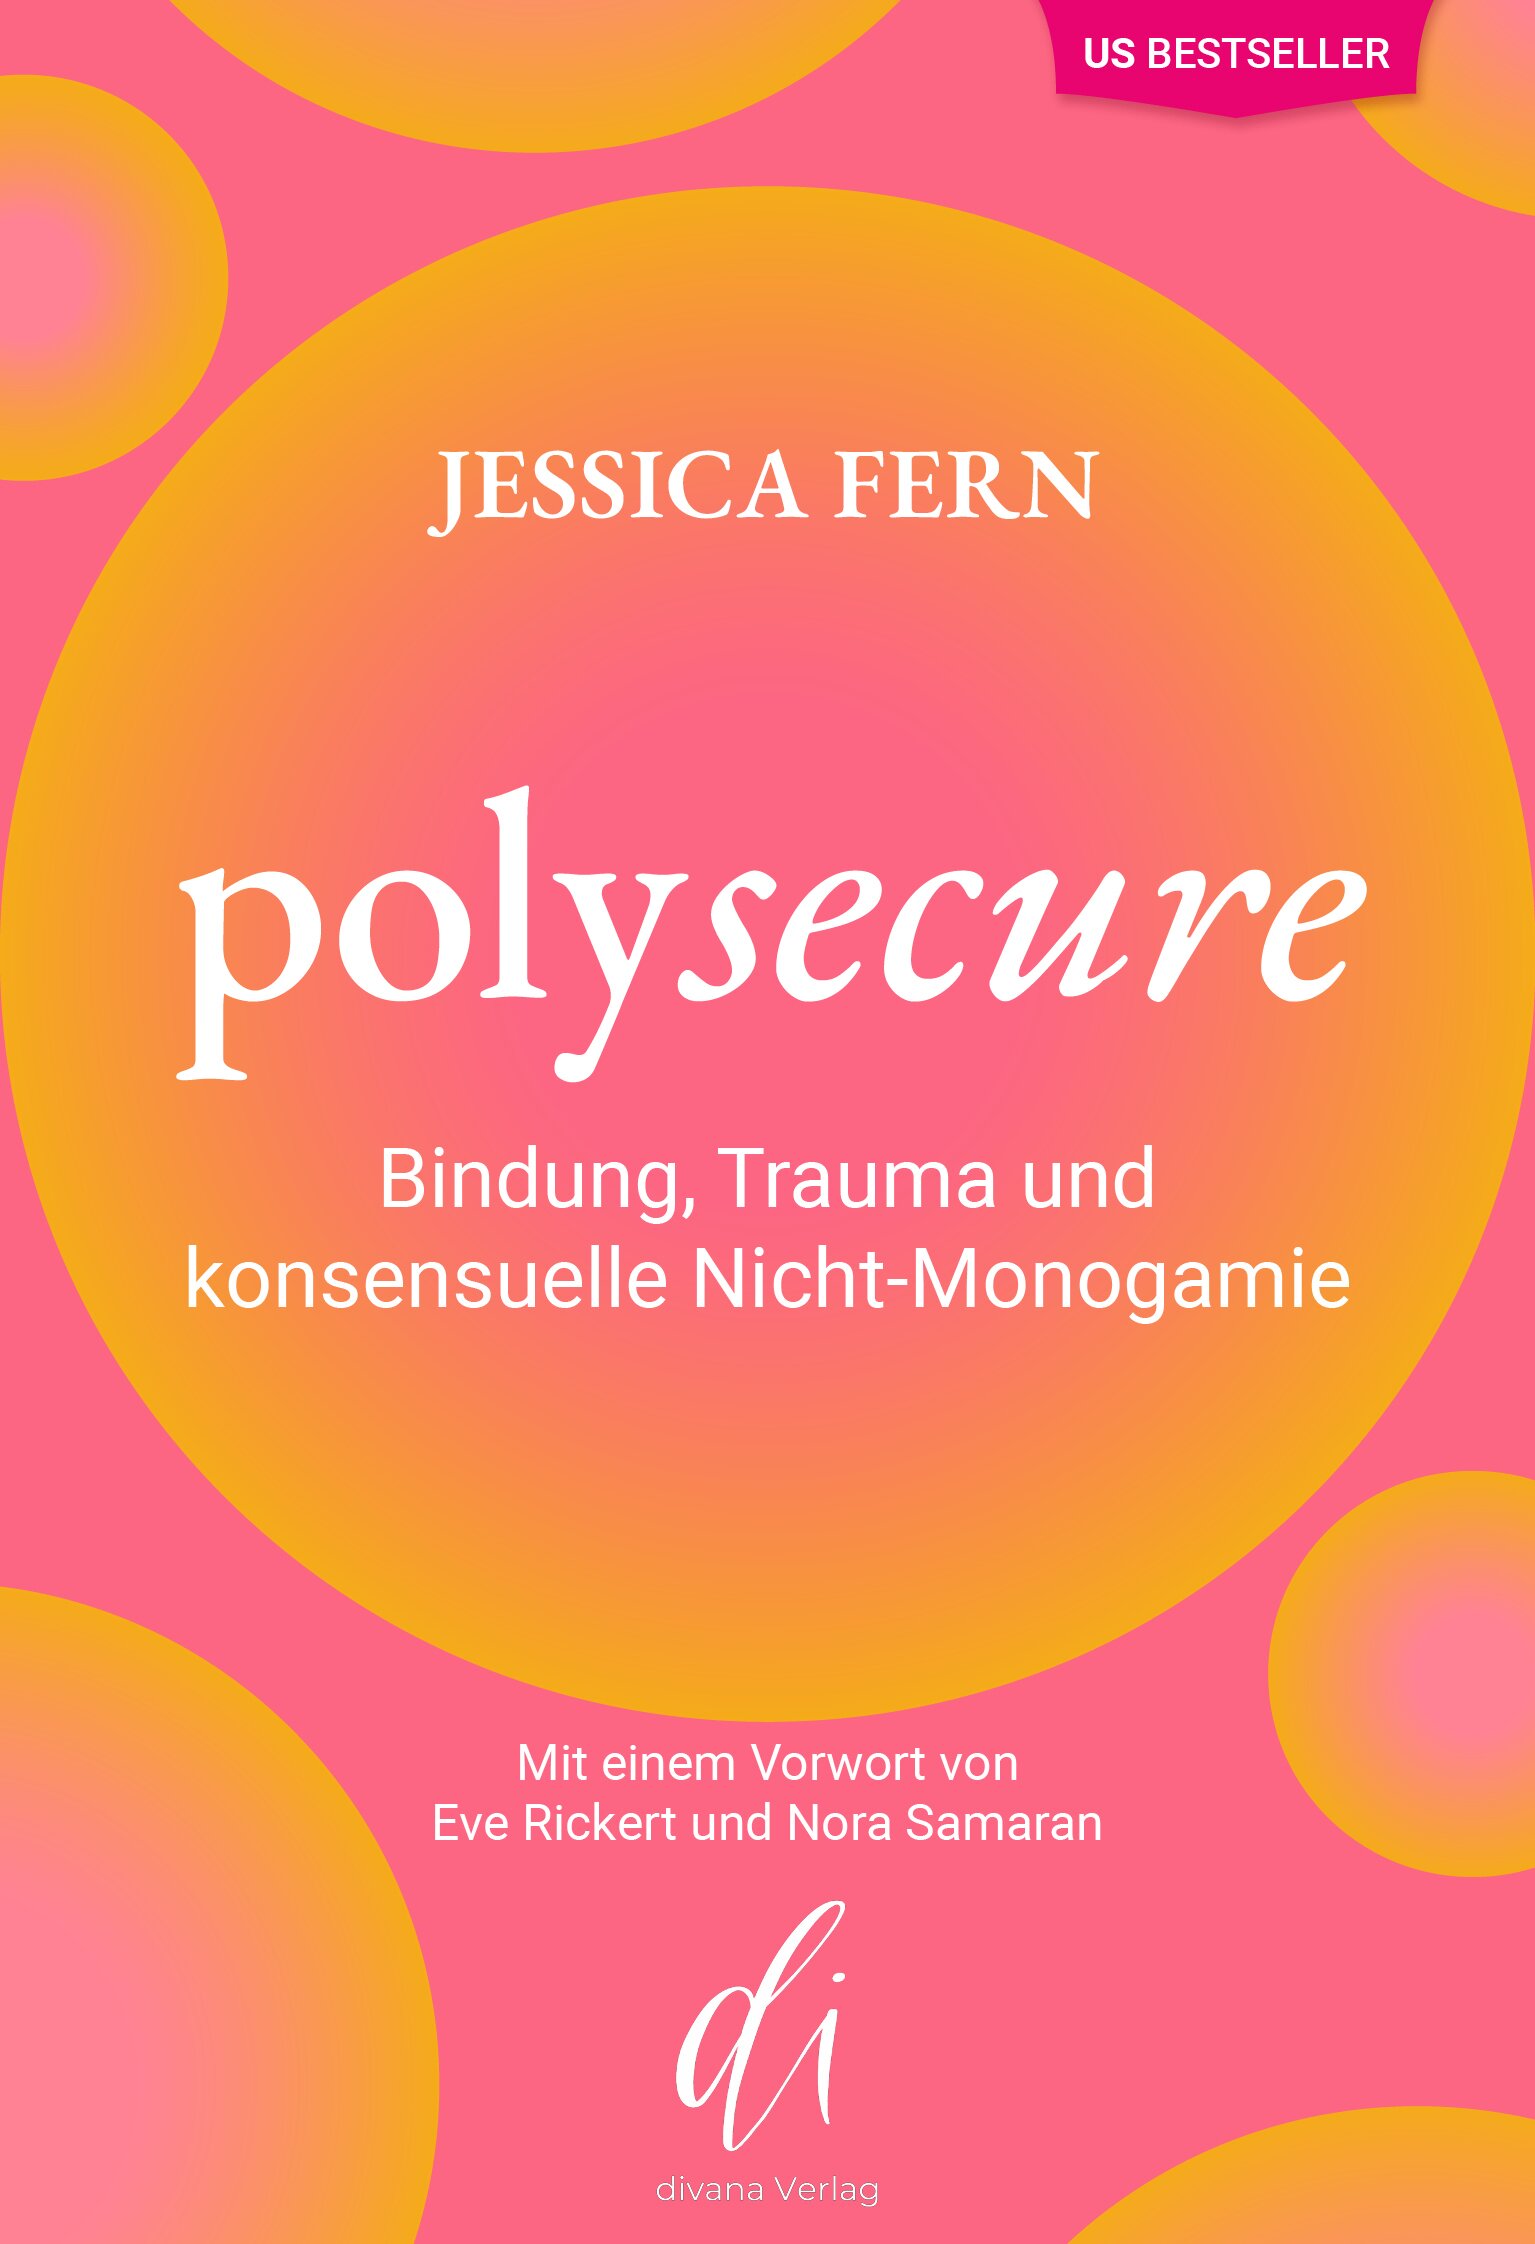 Rezension Teil II- Jessica Fern Polysecure